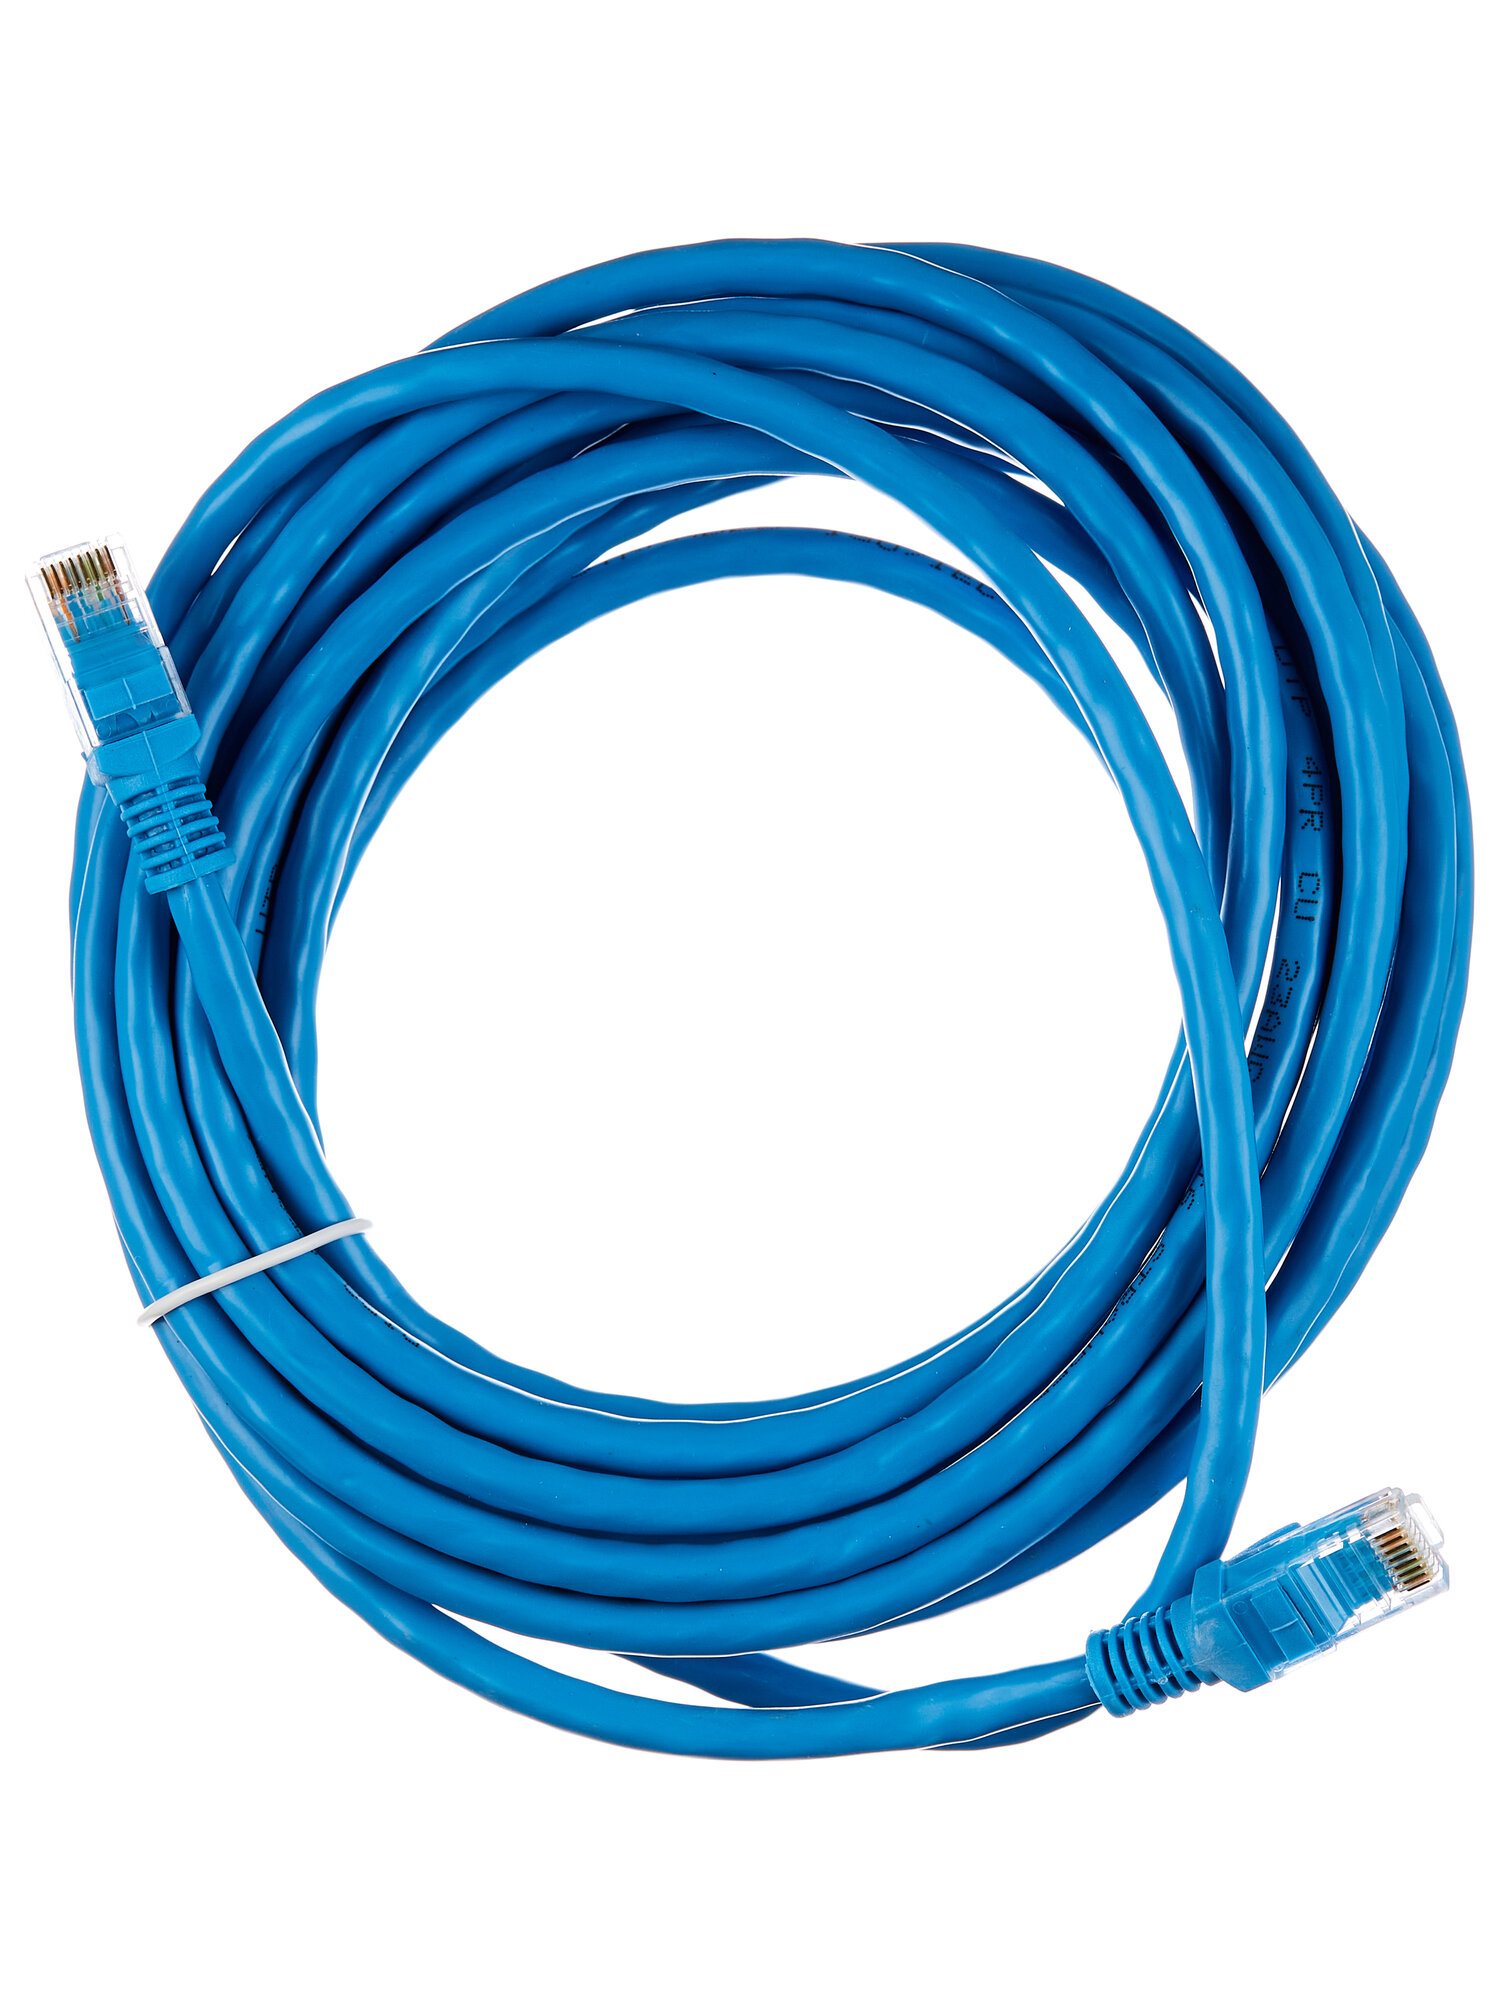 Патч корд кат6 сетевой кабель rj45 литой витая пара cat6 UTP4 LAN Интернет кабель для Wi-Fi роутера компьютера Cu Чистая медь 5 метров 003-300119